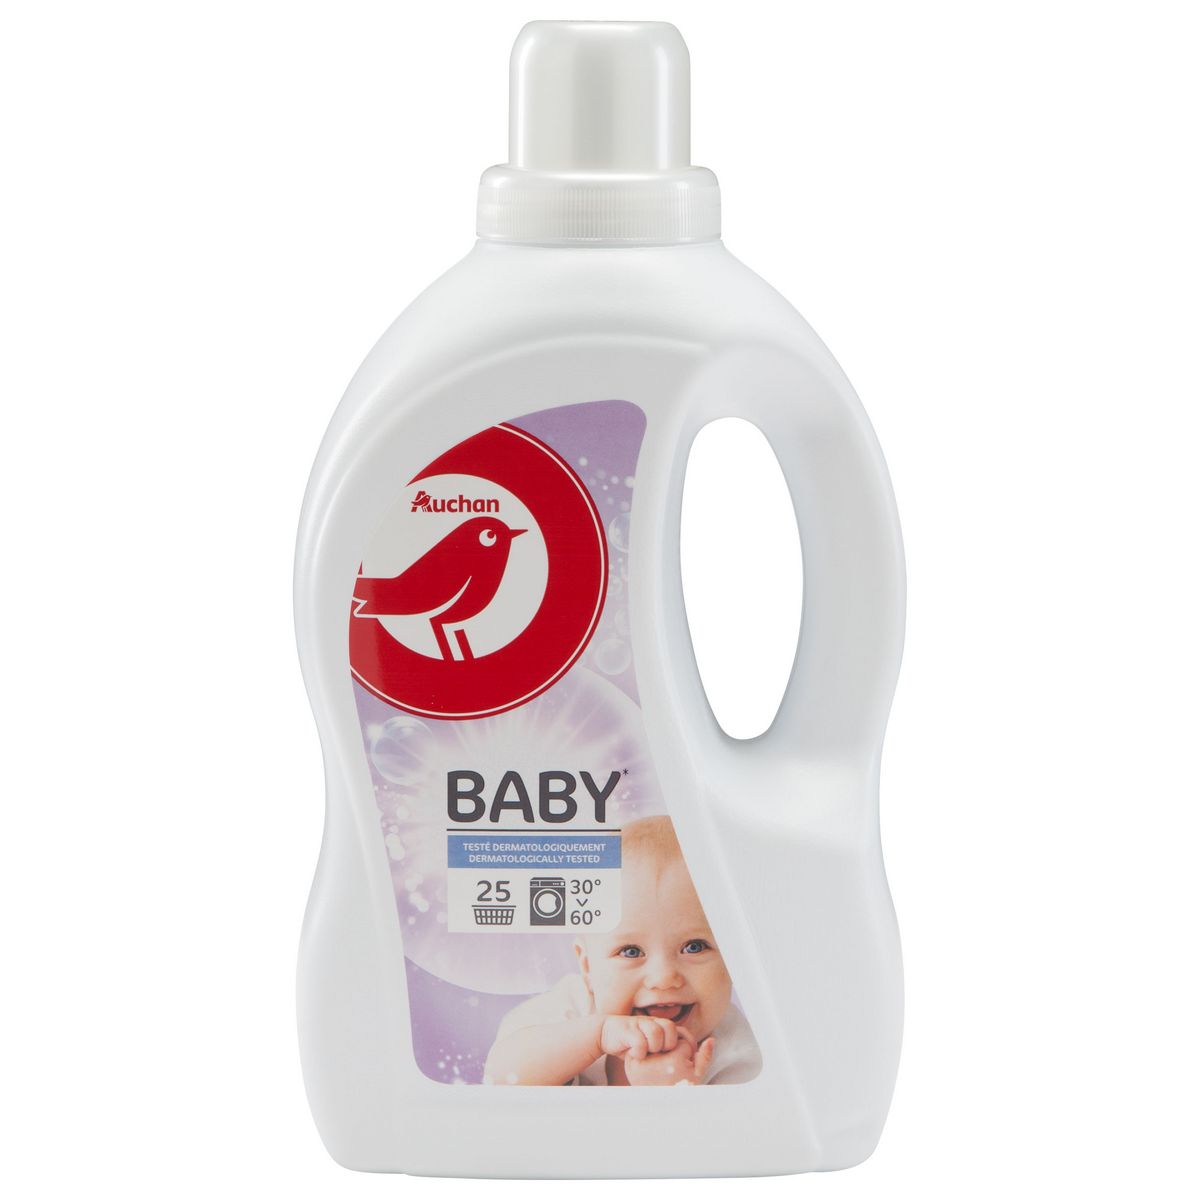 AUCHAN BABY Lessive liquide pour bébé 25 lavages 1,5l pas cher 